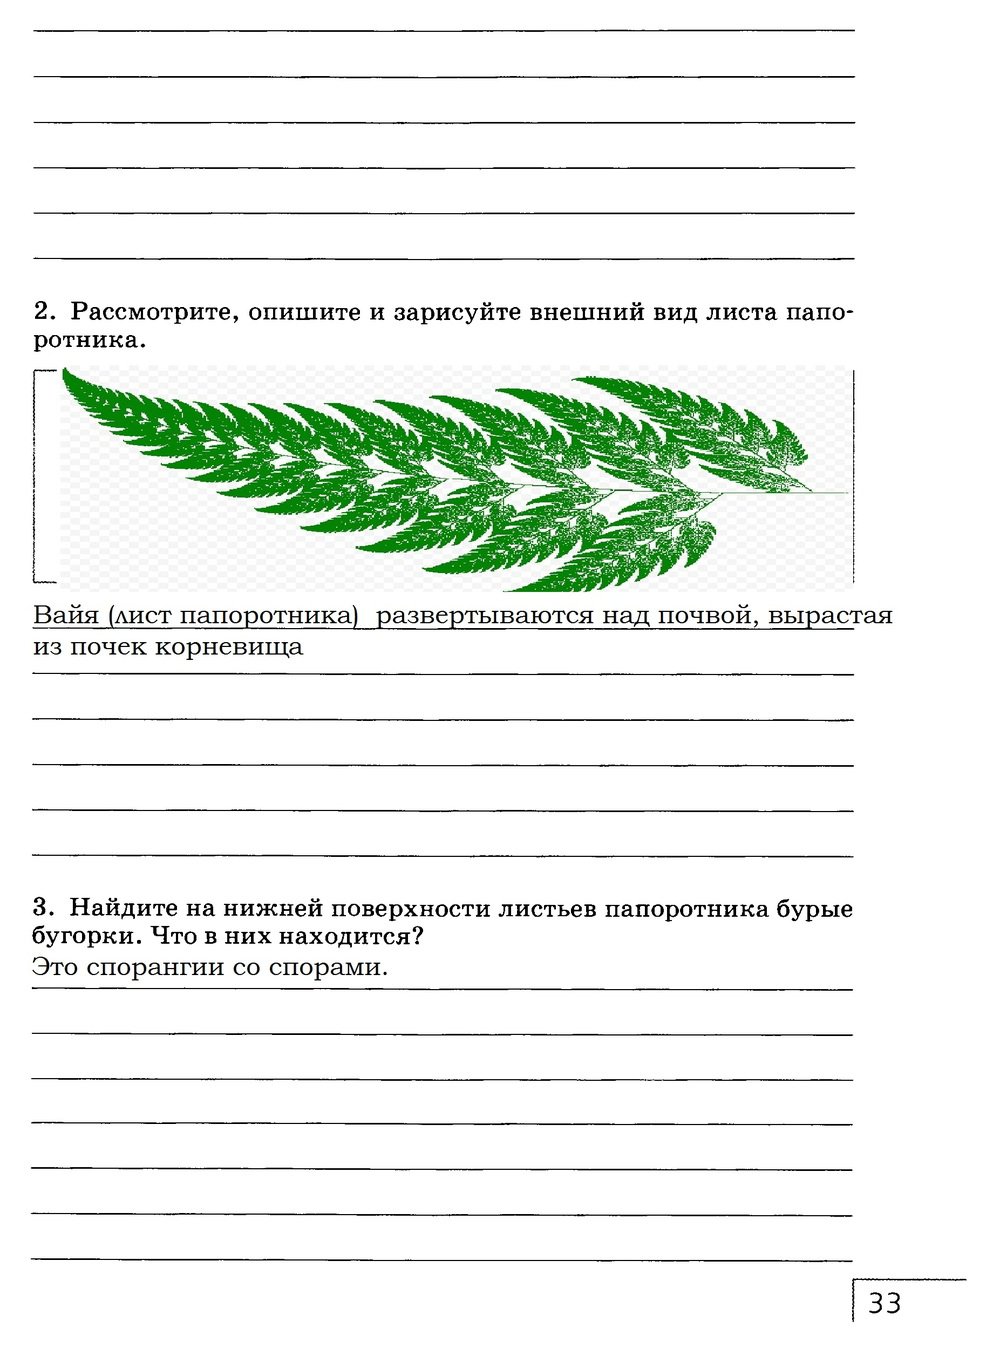 гдз 7 класс рабочая тетрадь страница 33 биология Захаров, Сонин